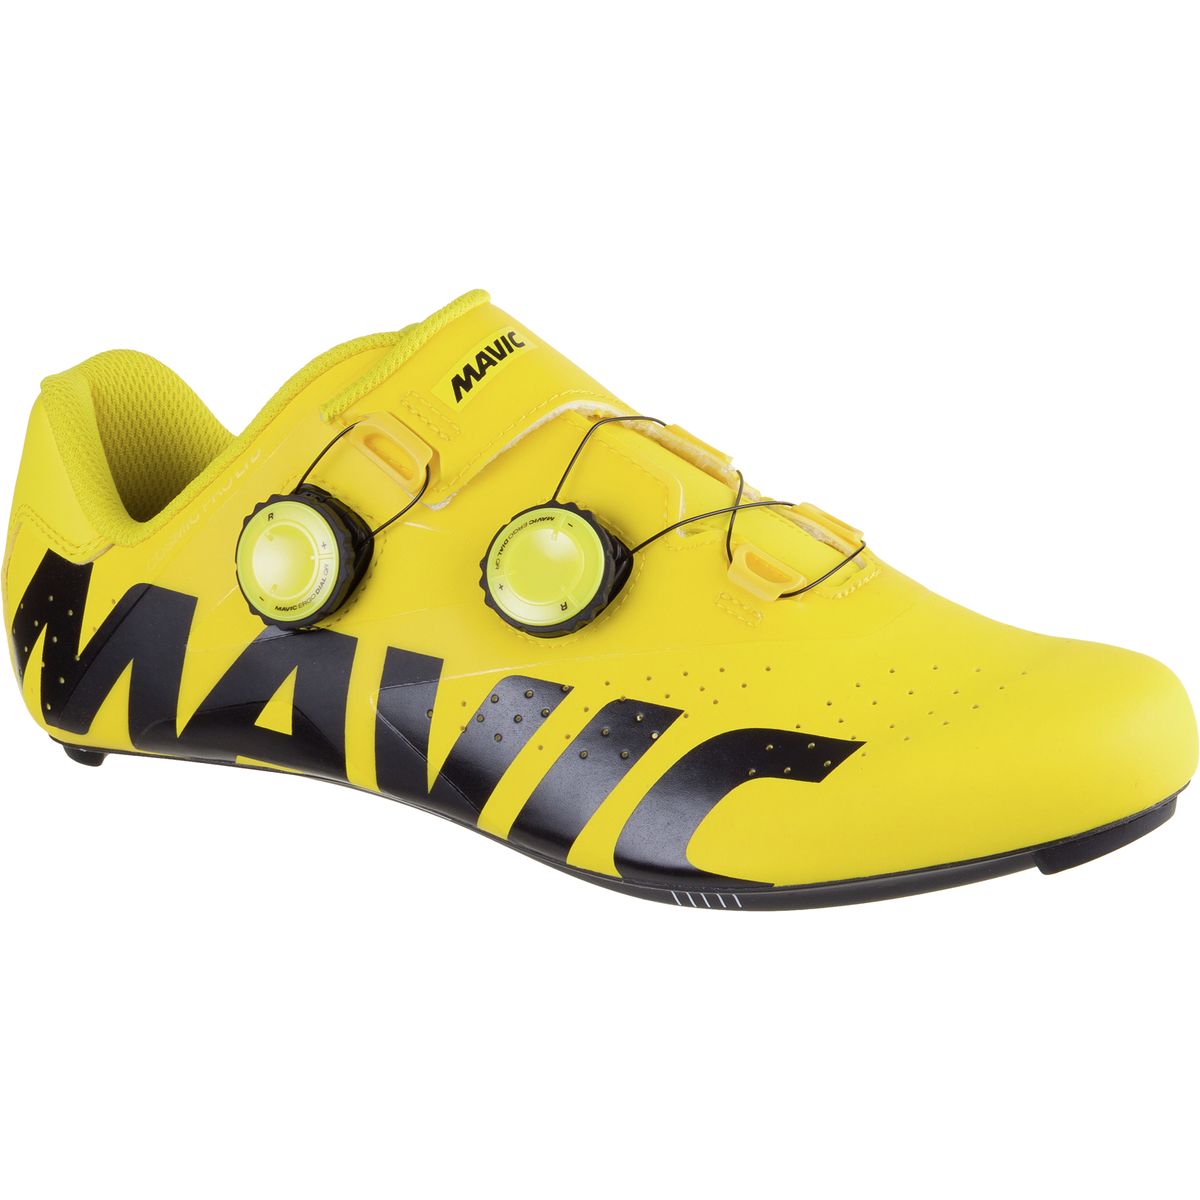 Mavic Cosmic Pro LTD Shoe Men's